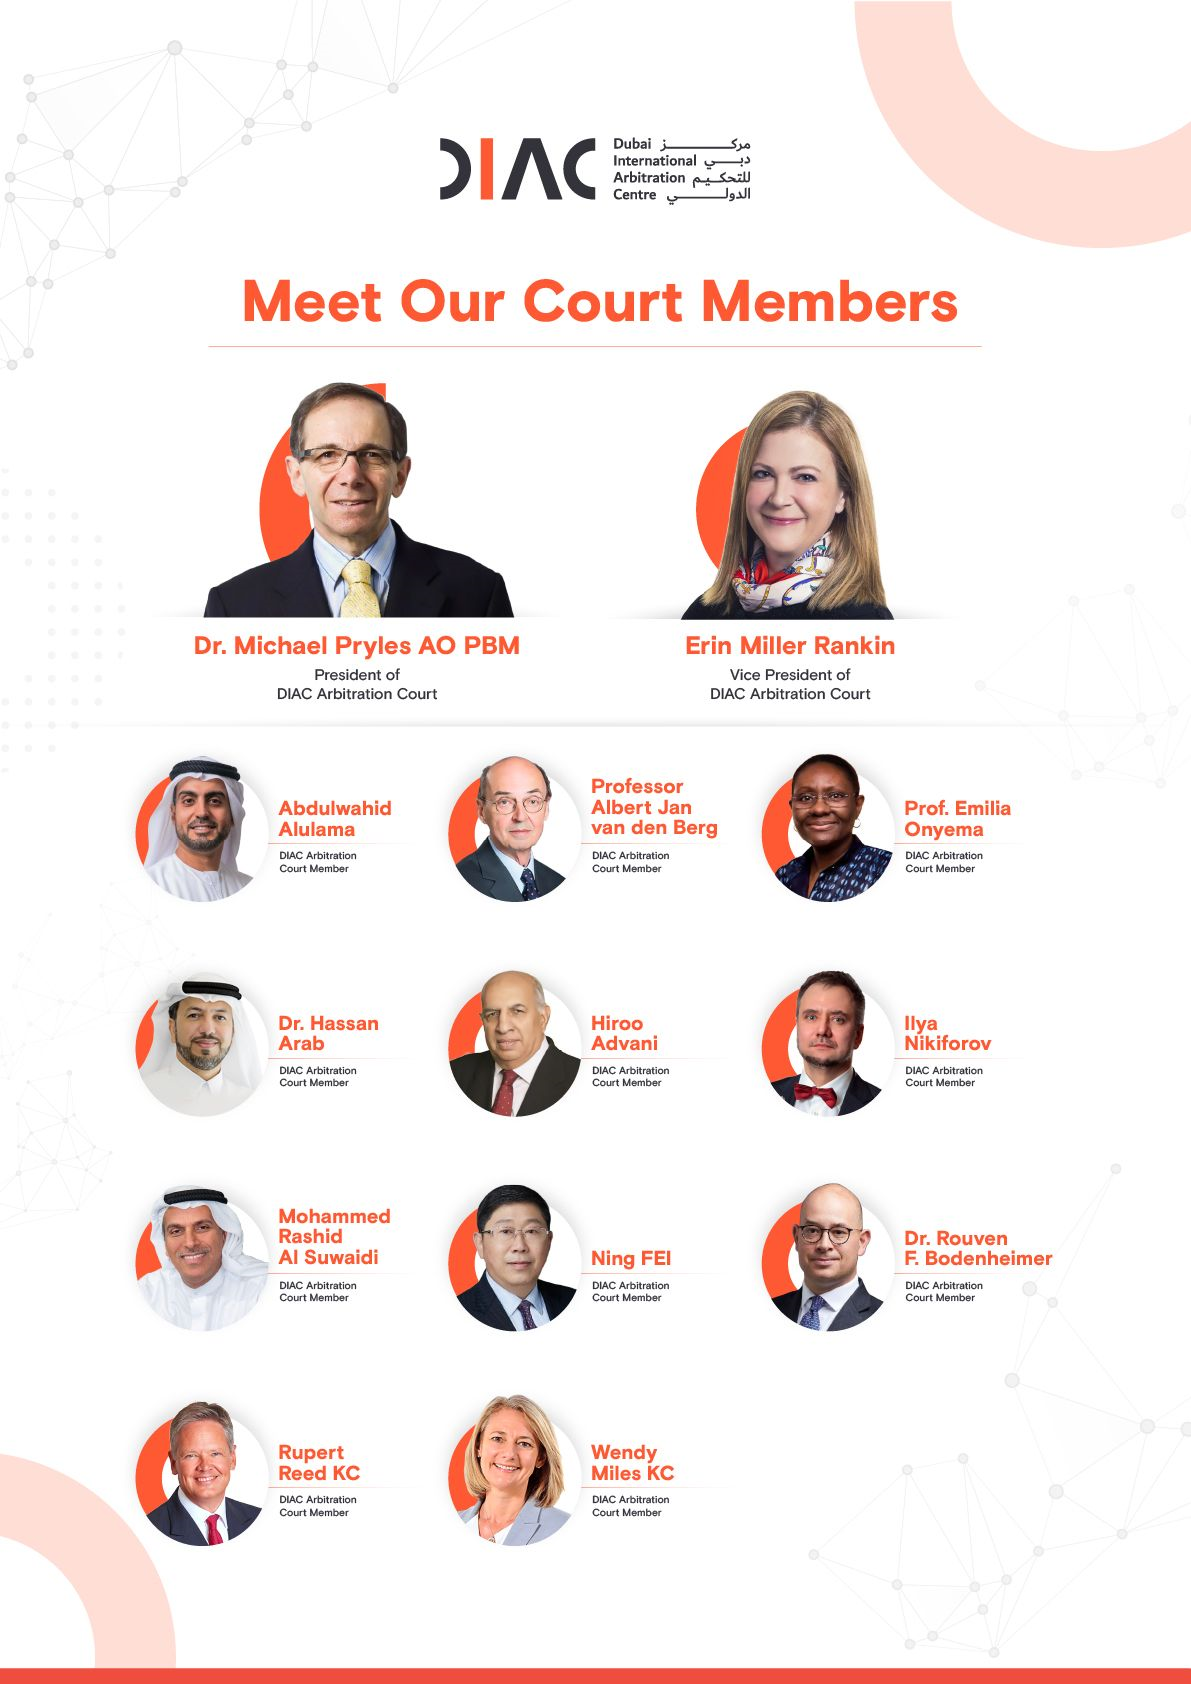 مركز دبي للتحكيم الدولي يعيد تشكيل محكمة التحكيم لتضم خبراء مرموقين في مجال التحكيم من مختلف أنحاء العالم